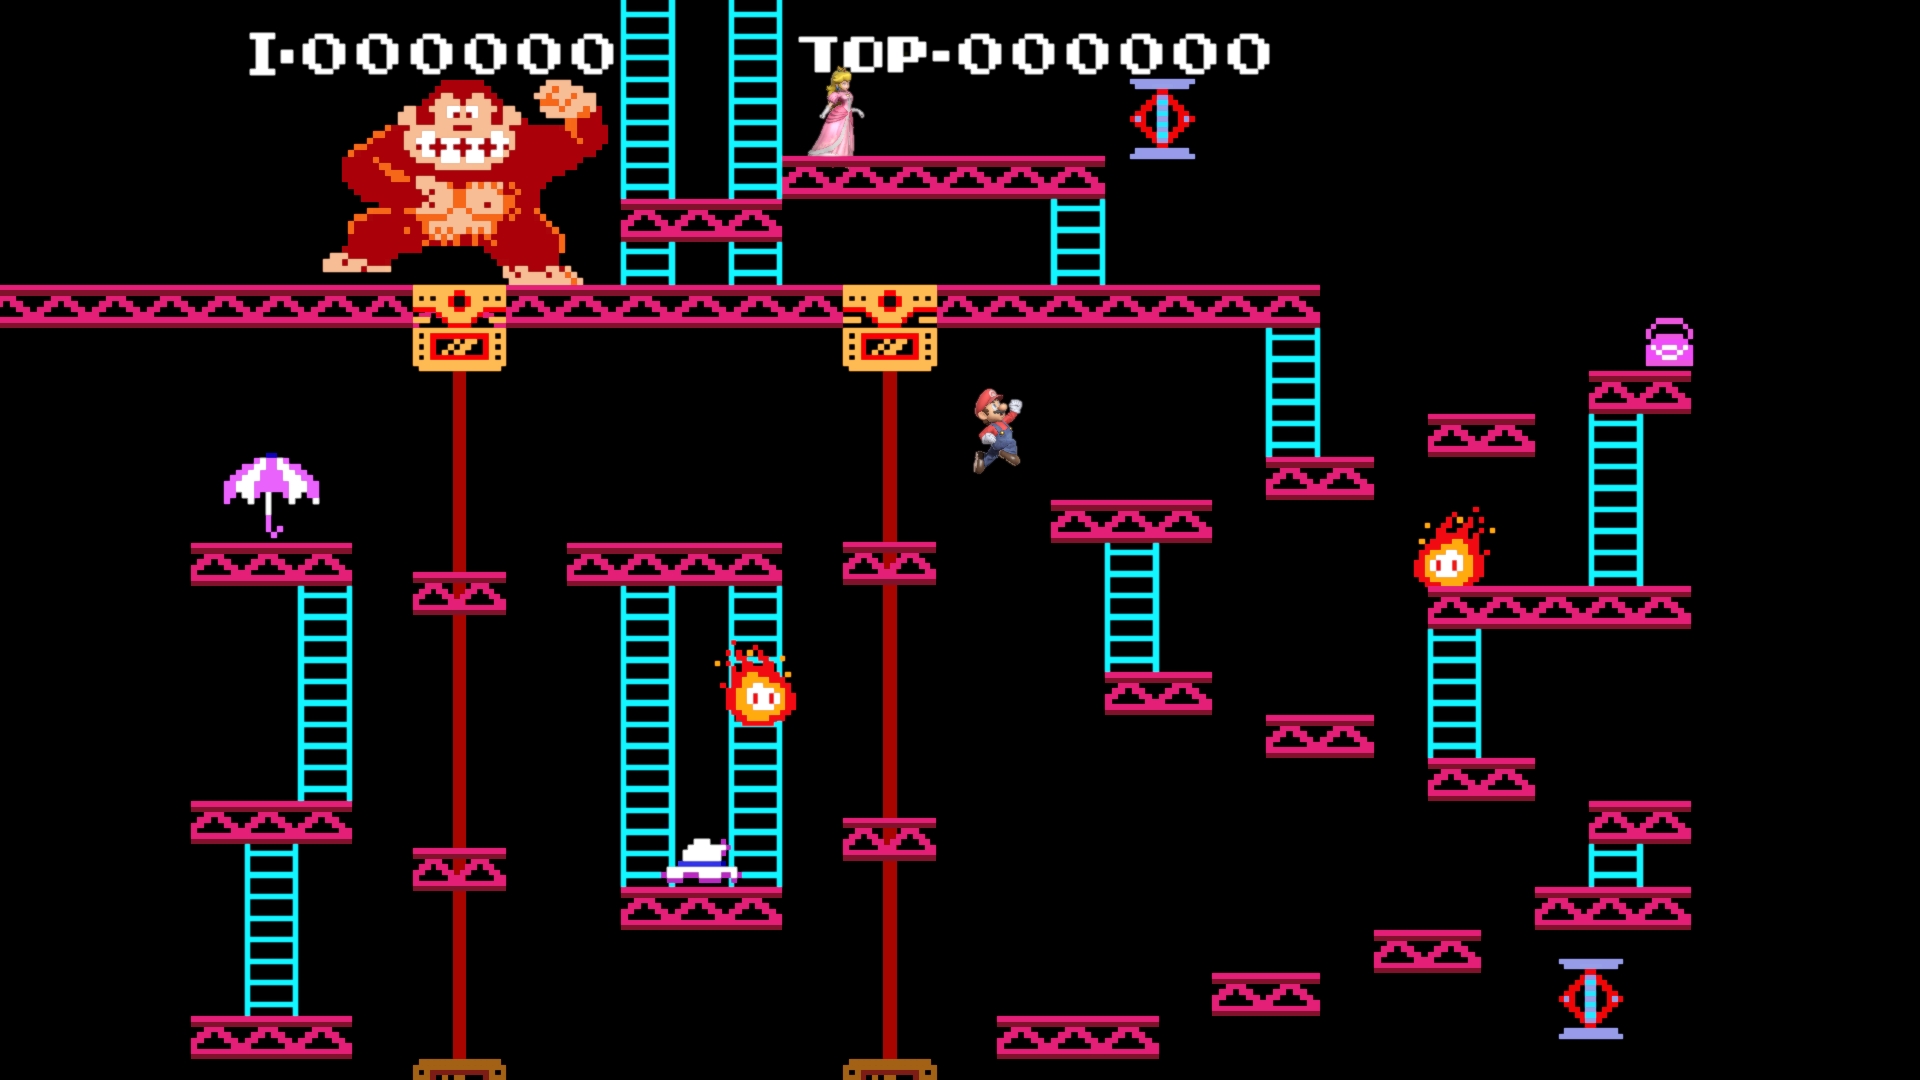 桜井 政博 Masahiro Sakurai 19年のきょう ドンキーコング Donkey Kong ファミコン版発売 1981年登場のアーケード版は ジャンプアクションの始祖 発売時のファミコンの売りは 名作が遜色なく家で遊べることでした スマブラspでは ステージ 75m の